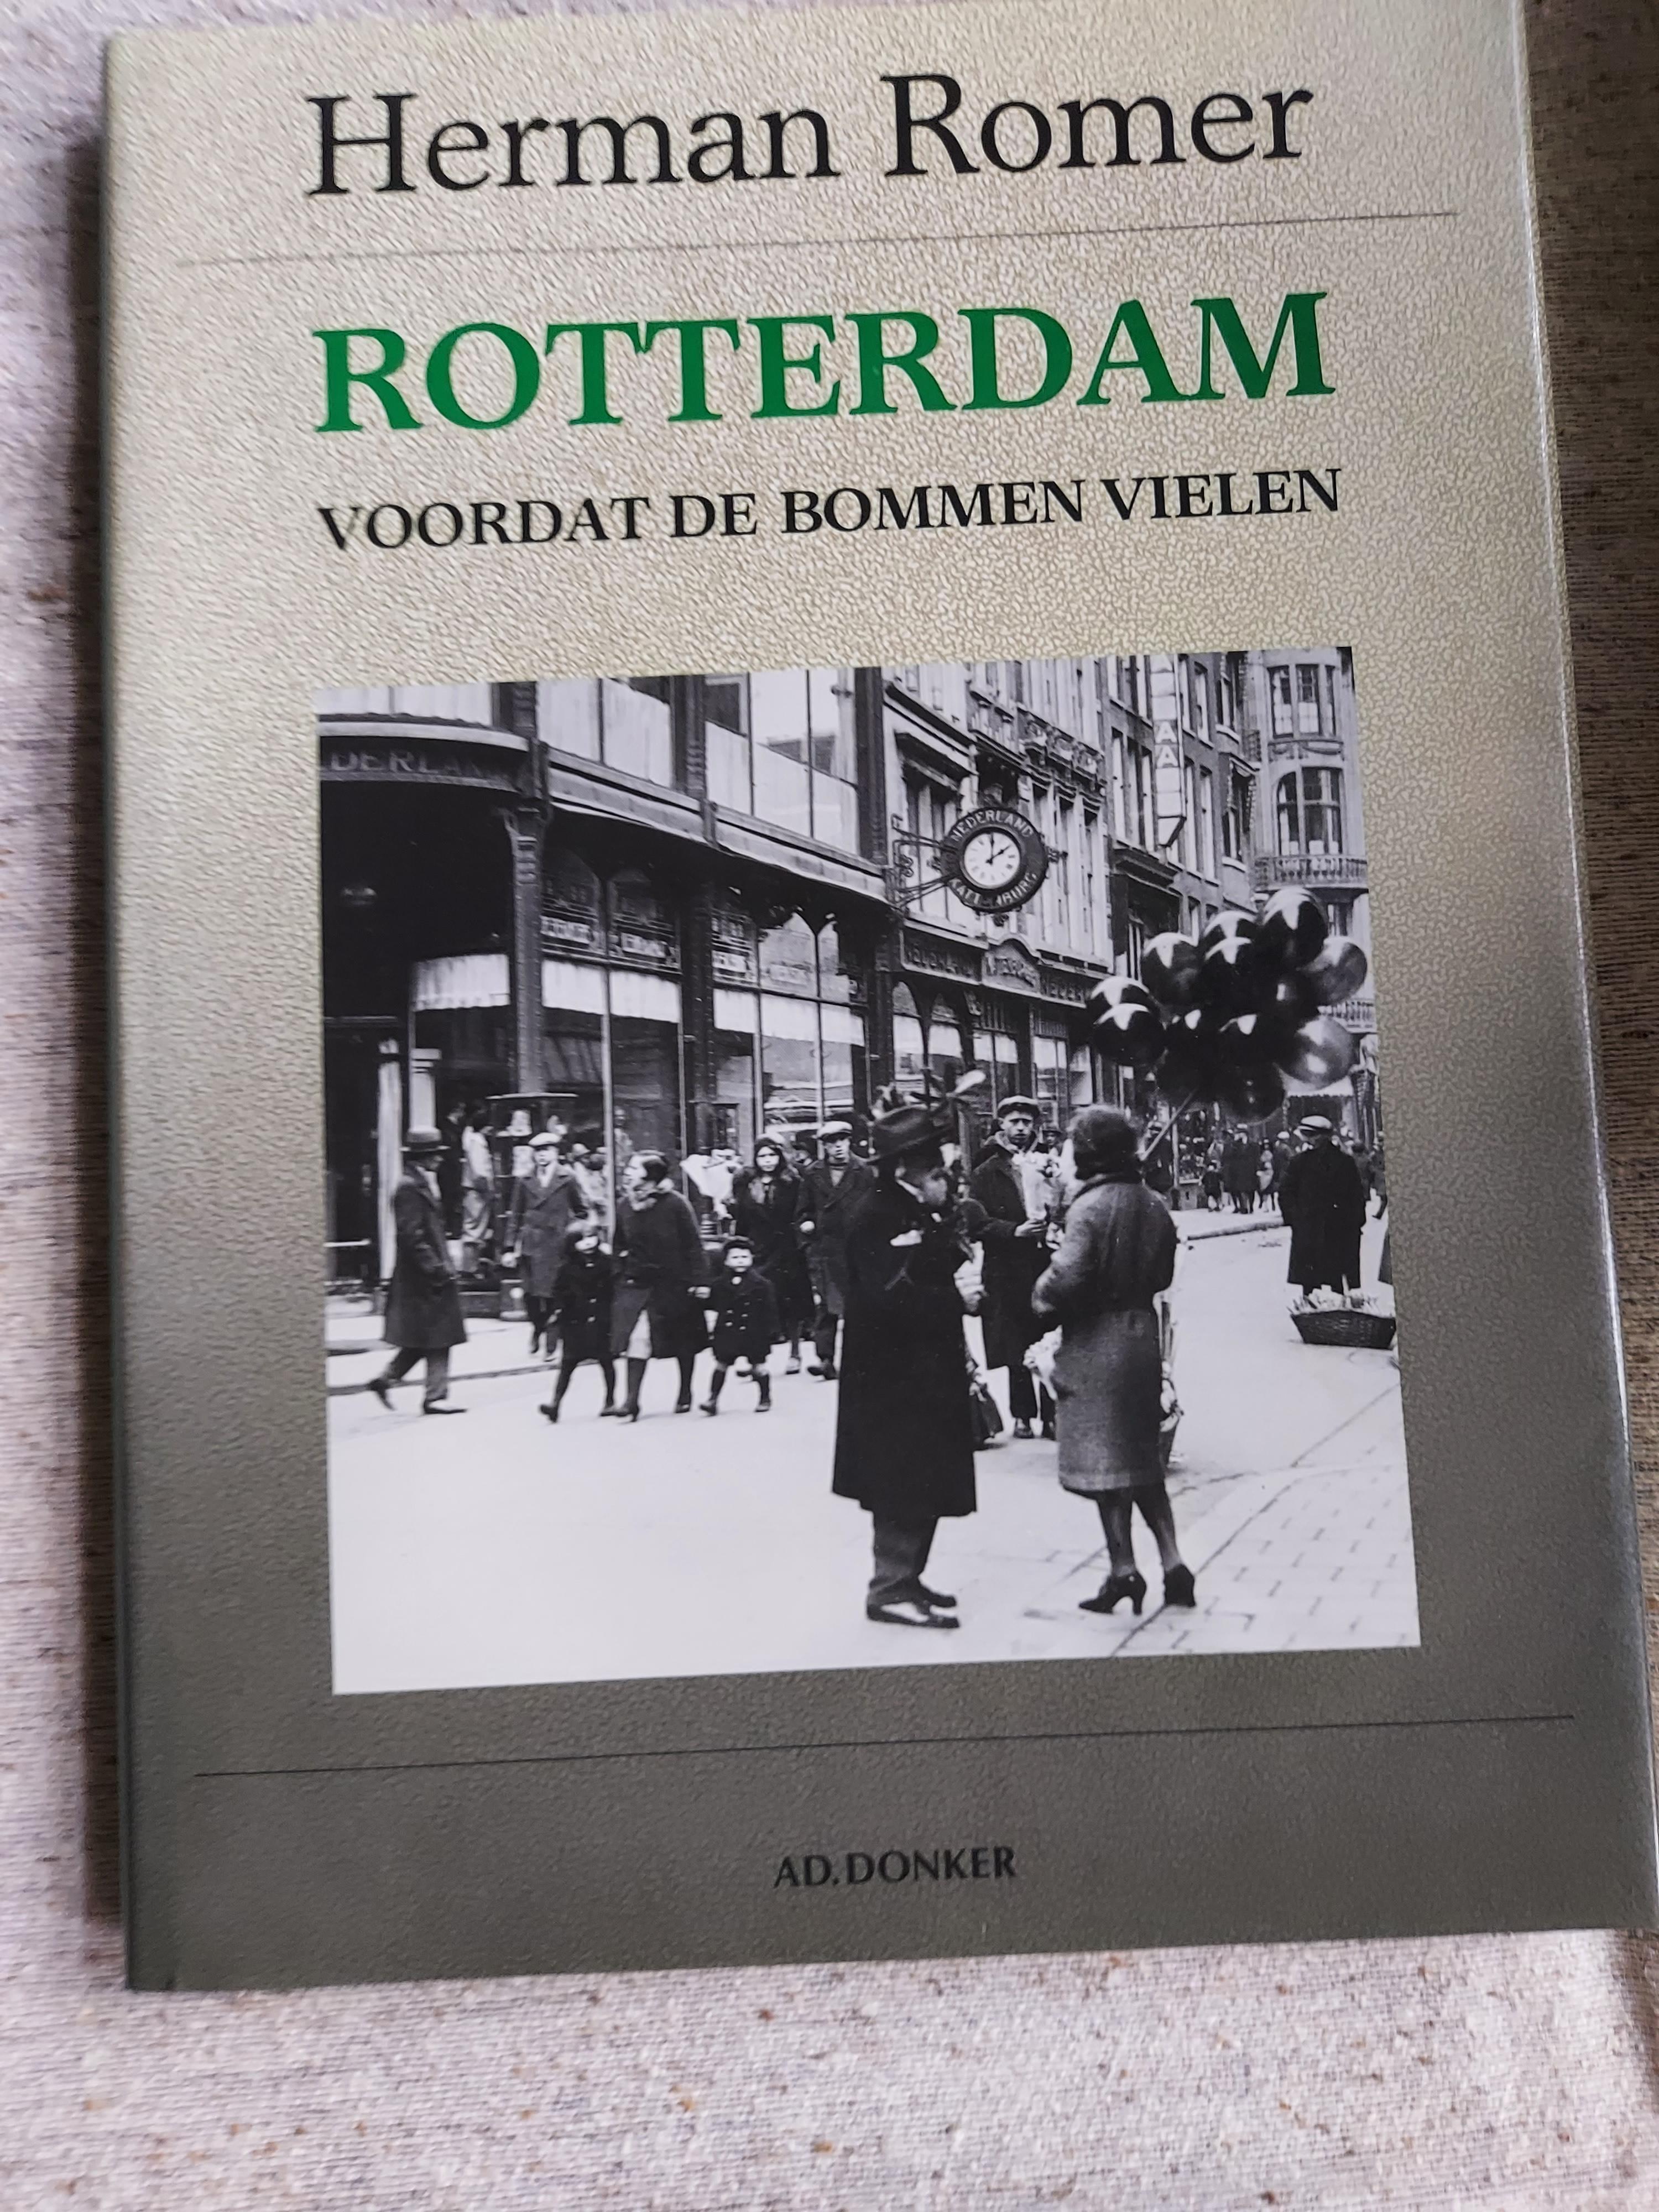 Rotterdam, voordat de bommen vielen door Herman Romer